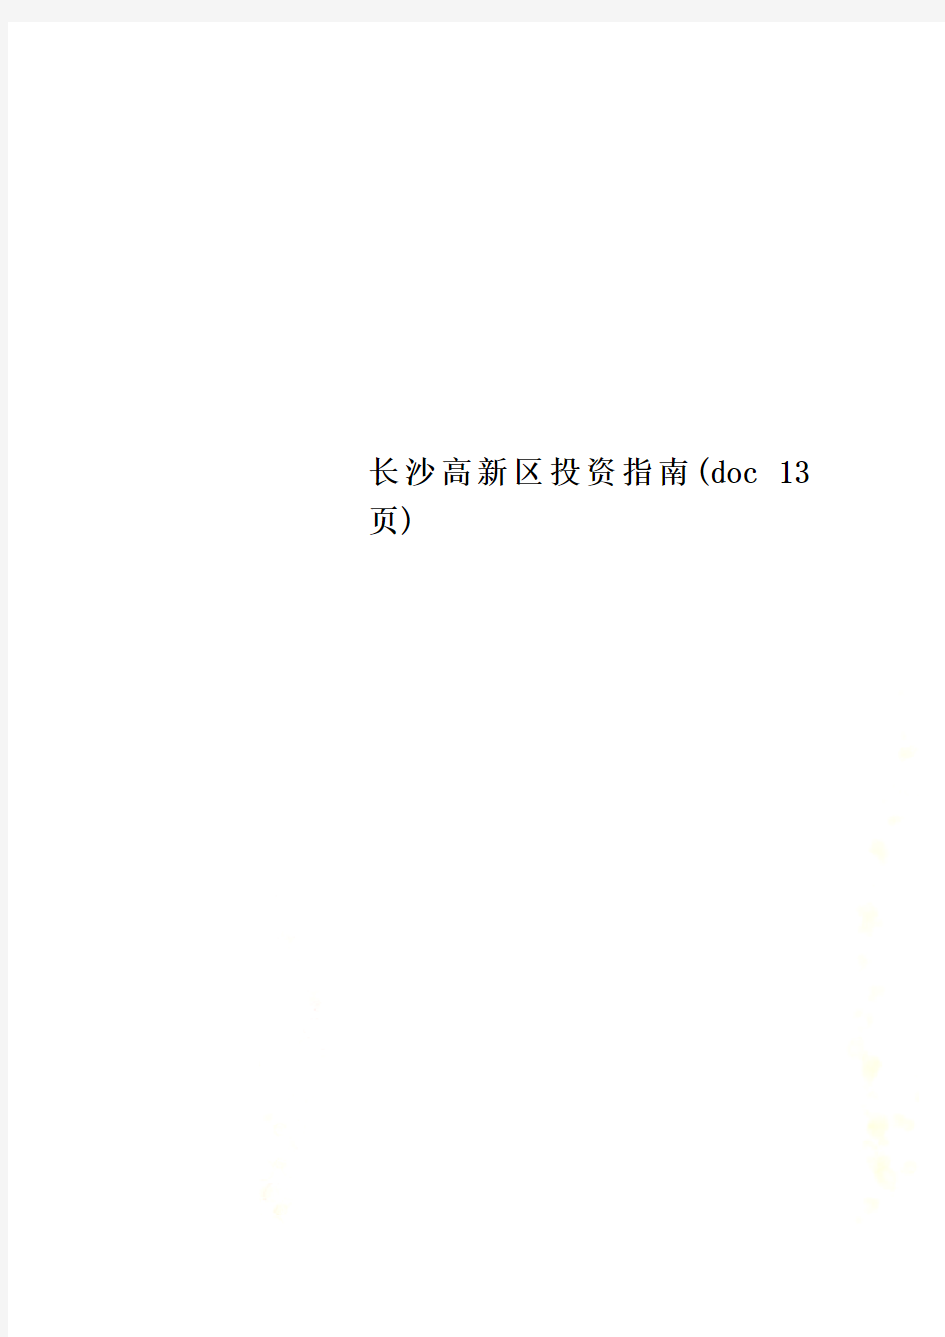 长沙高新区投资指南(doc 13页)